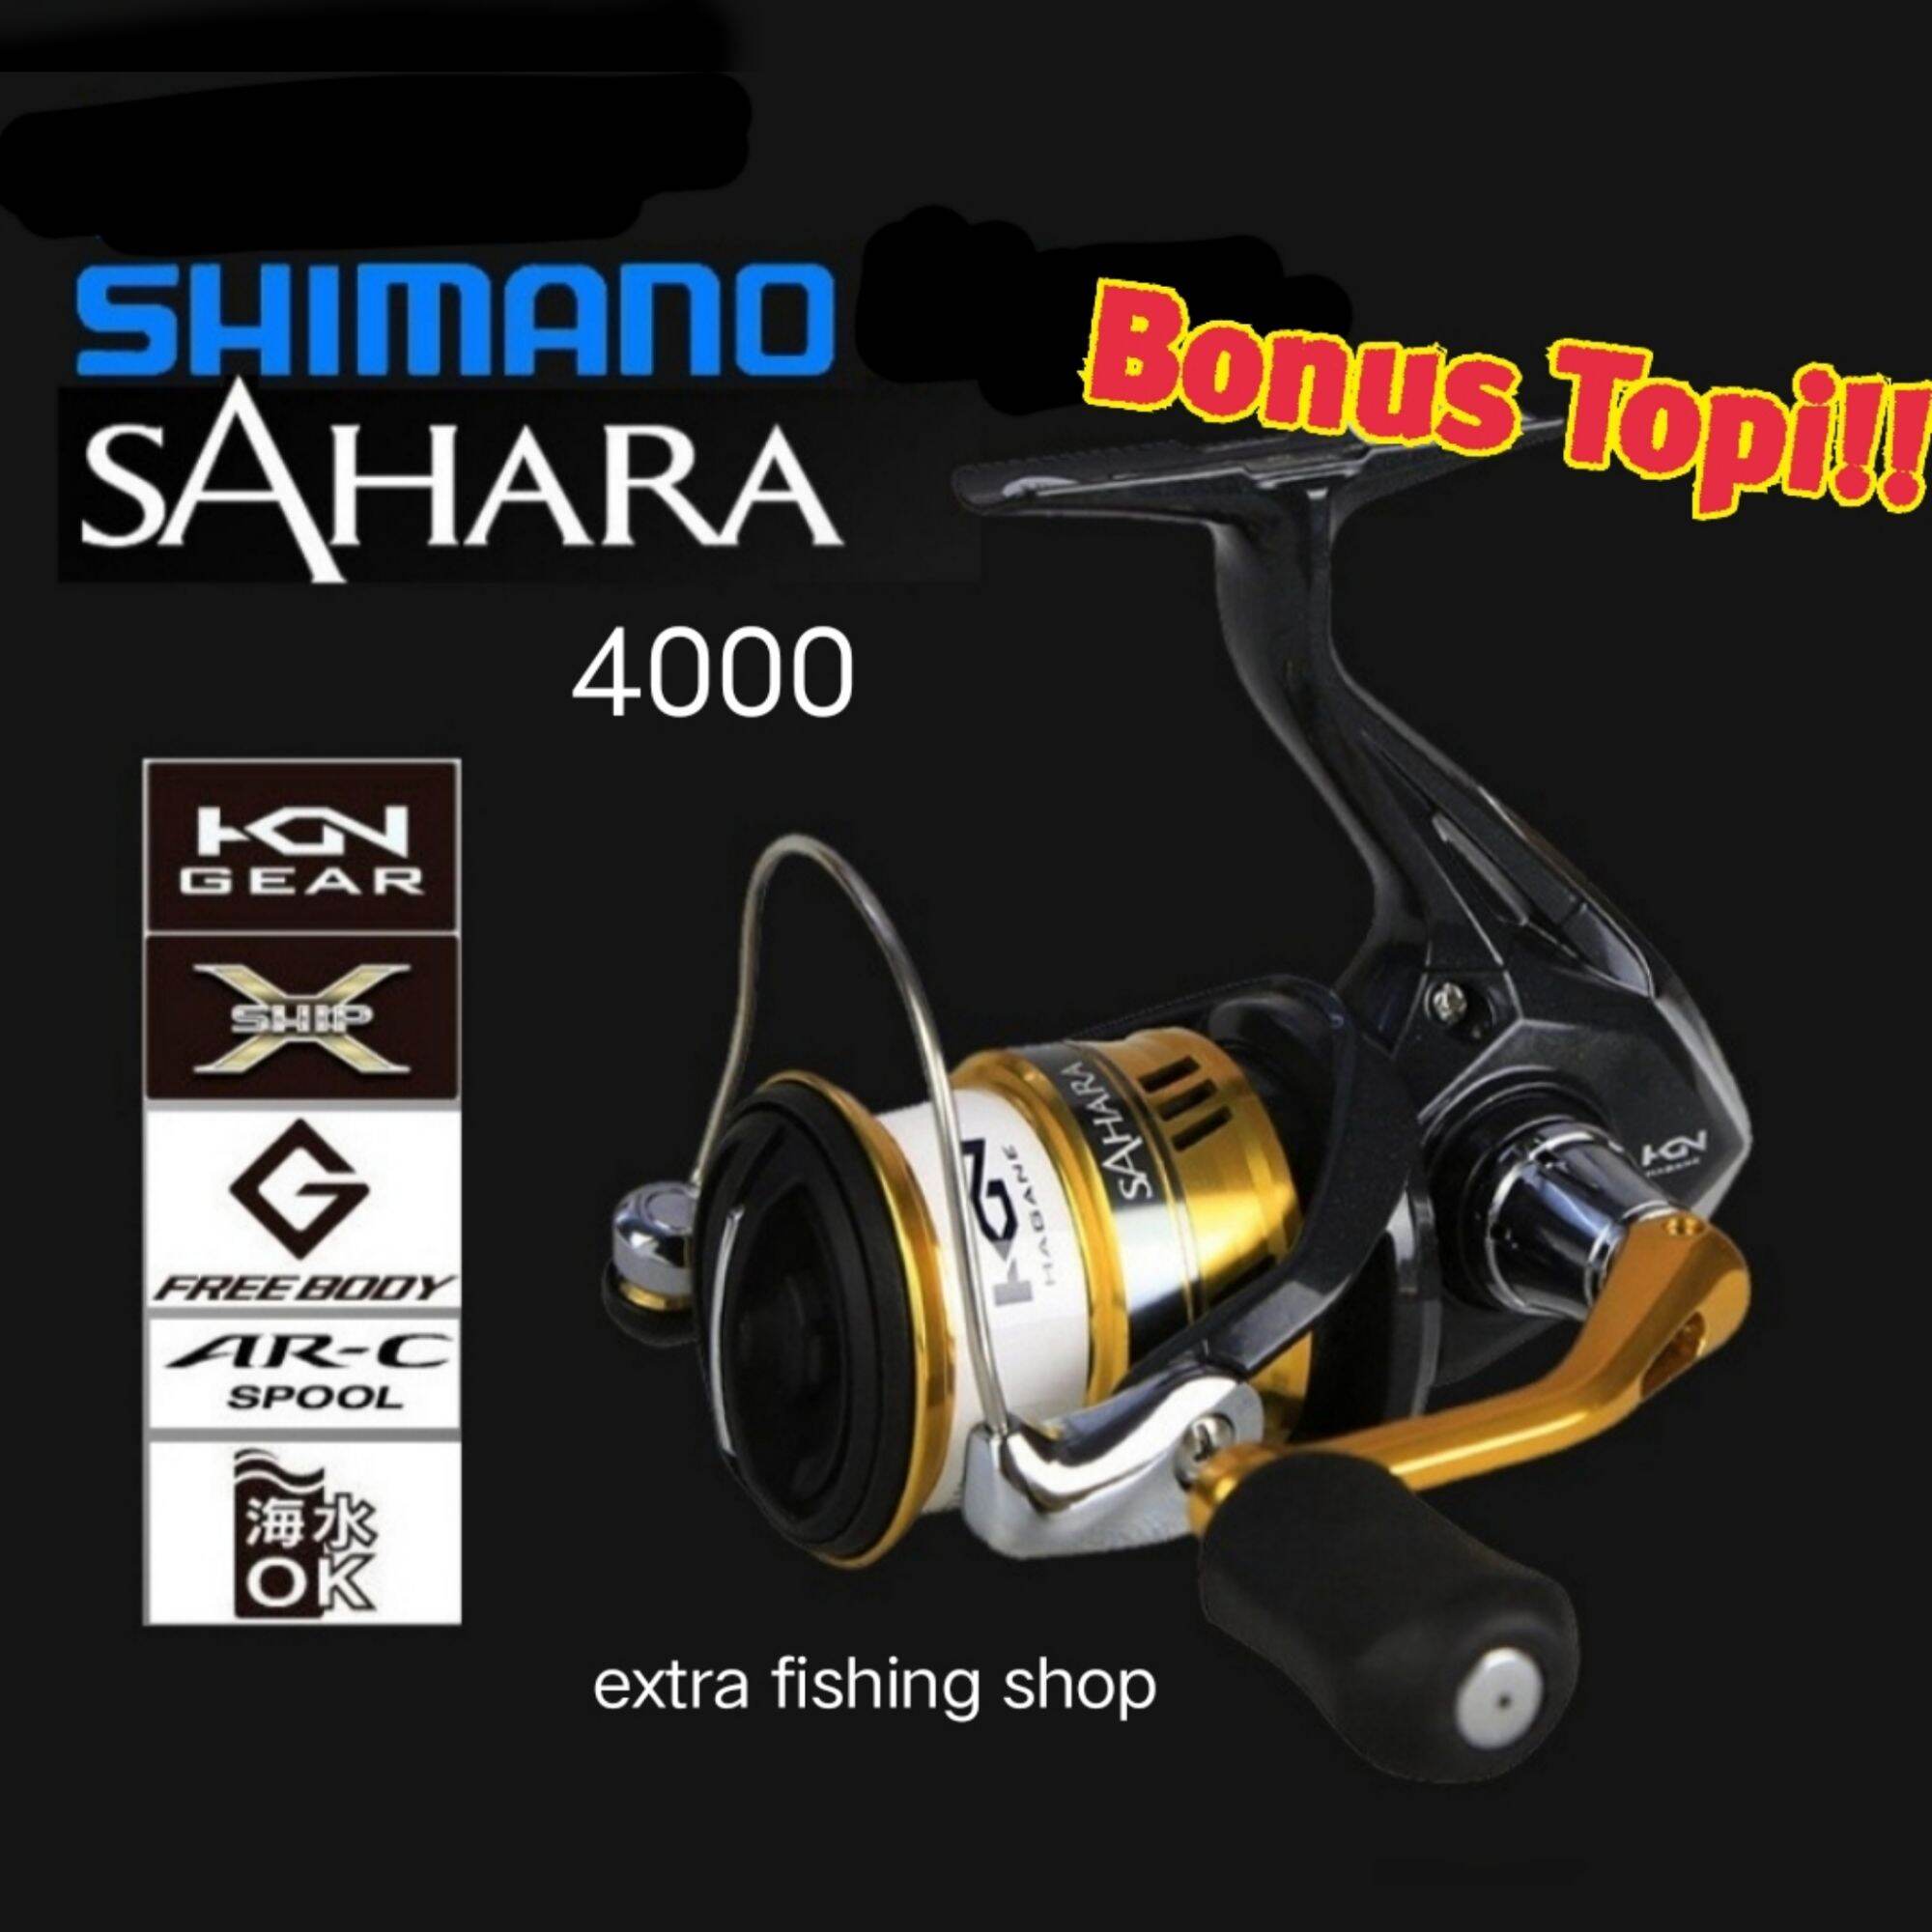 Shimano sahara 4000 spinning reel